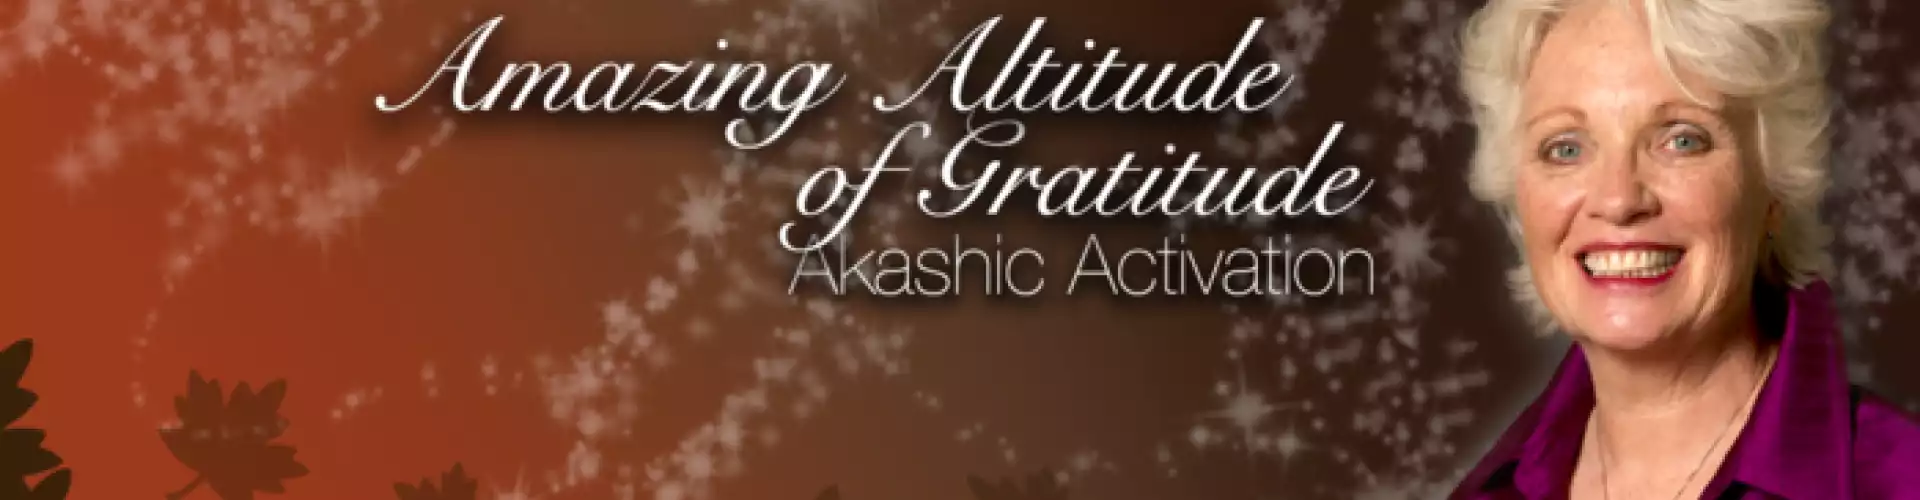 The Amazing Altitude of Gratitude: Akashic Activation